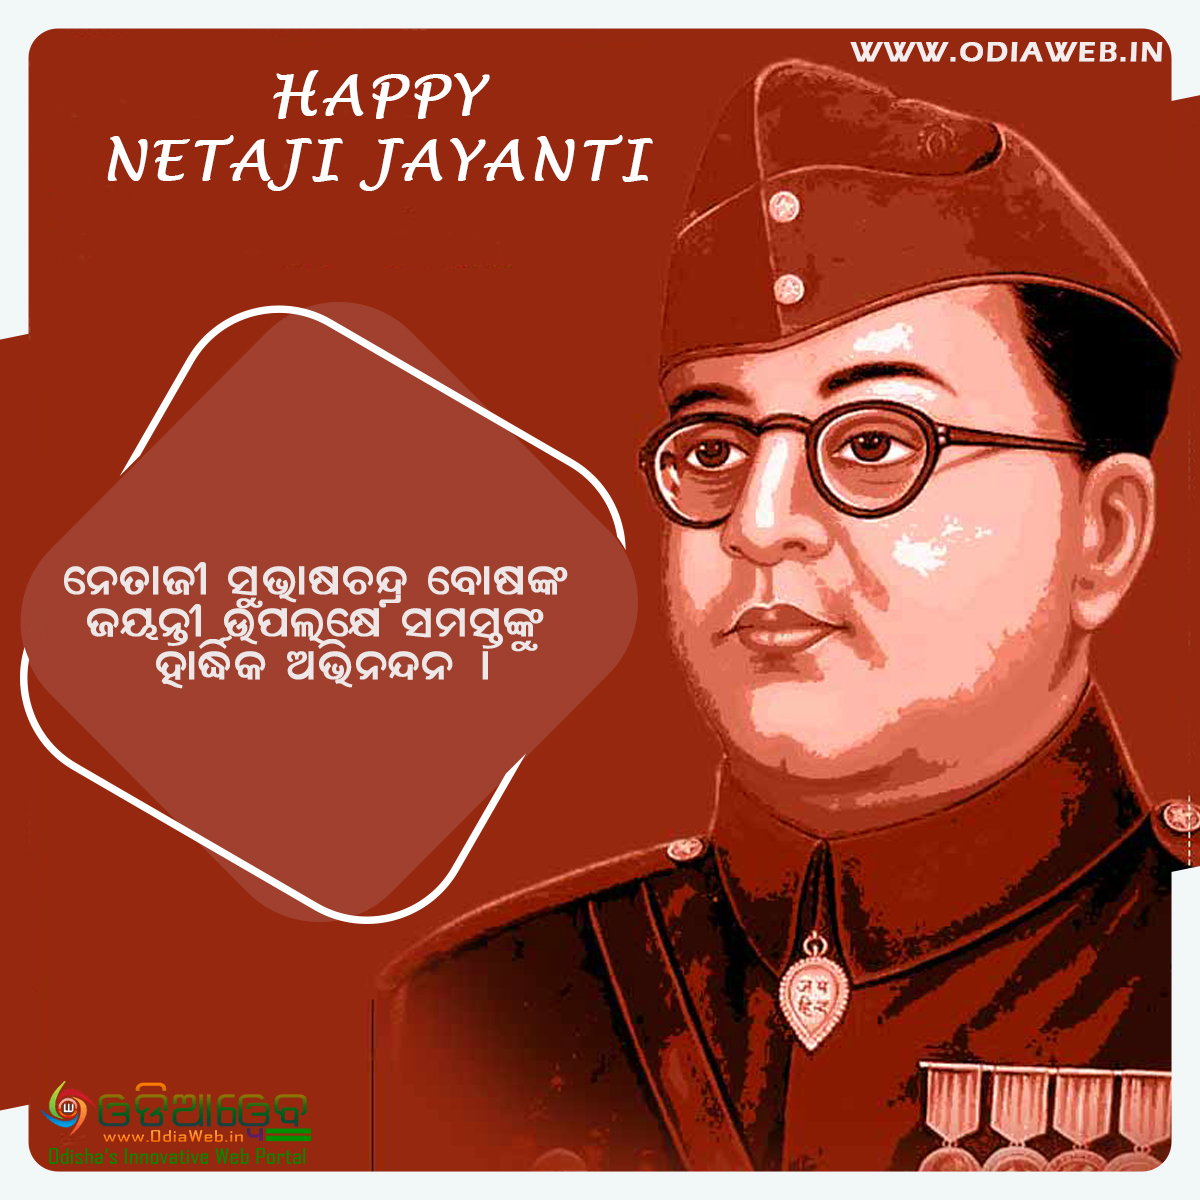 Happy Netaji Jayanti in Odia Wishes